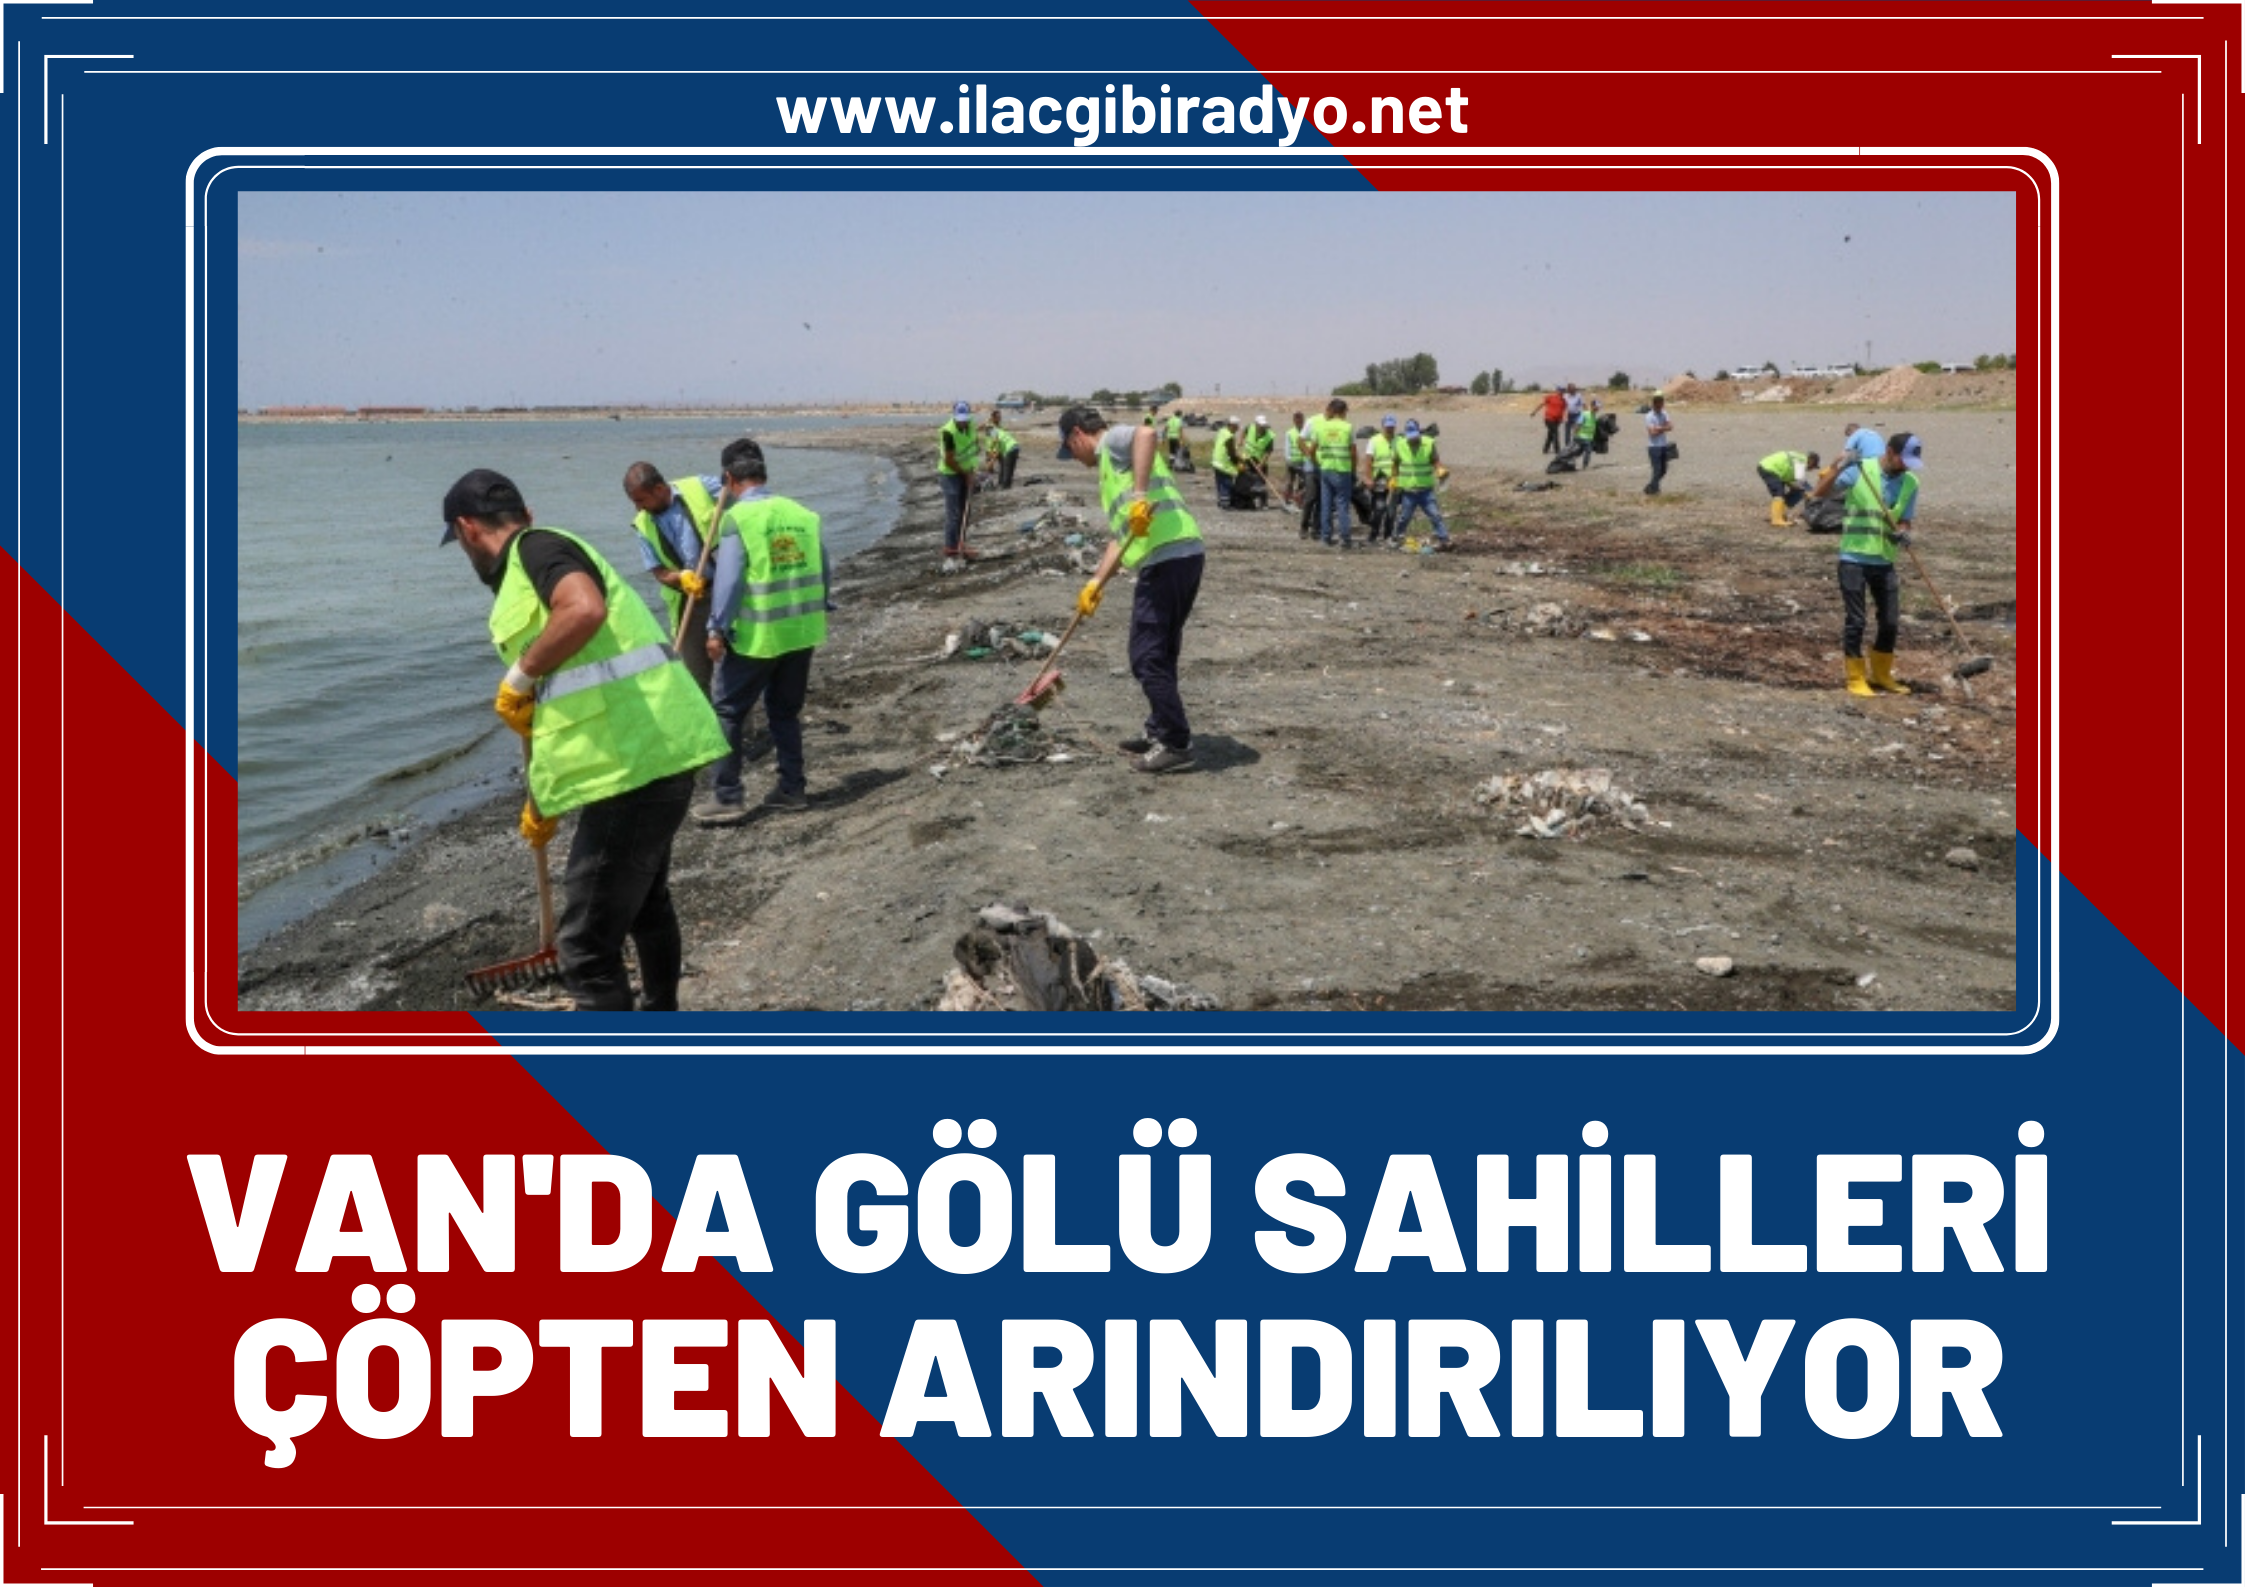 Van Gölü sahilleri çöpten arındırılıyor: Sahilde tonlarca çöp toplandı!